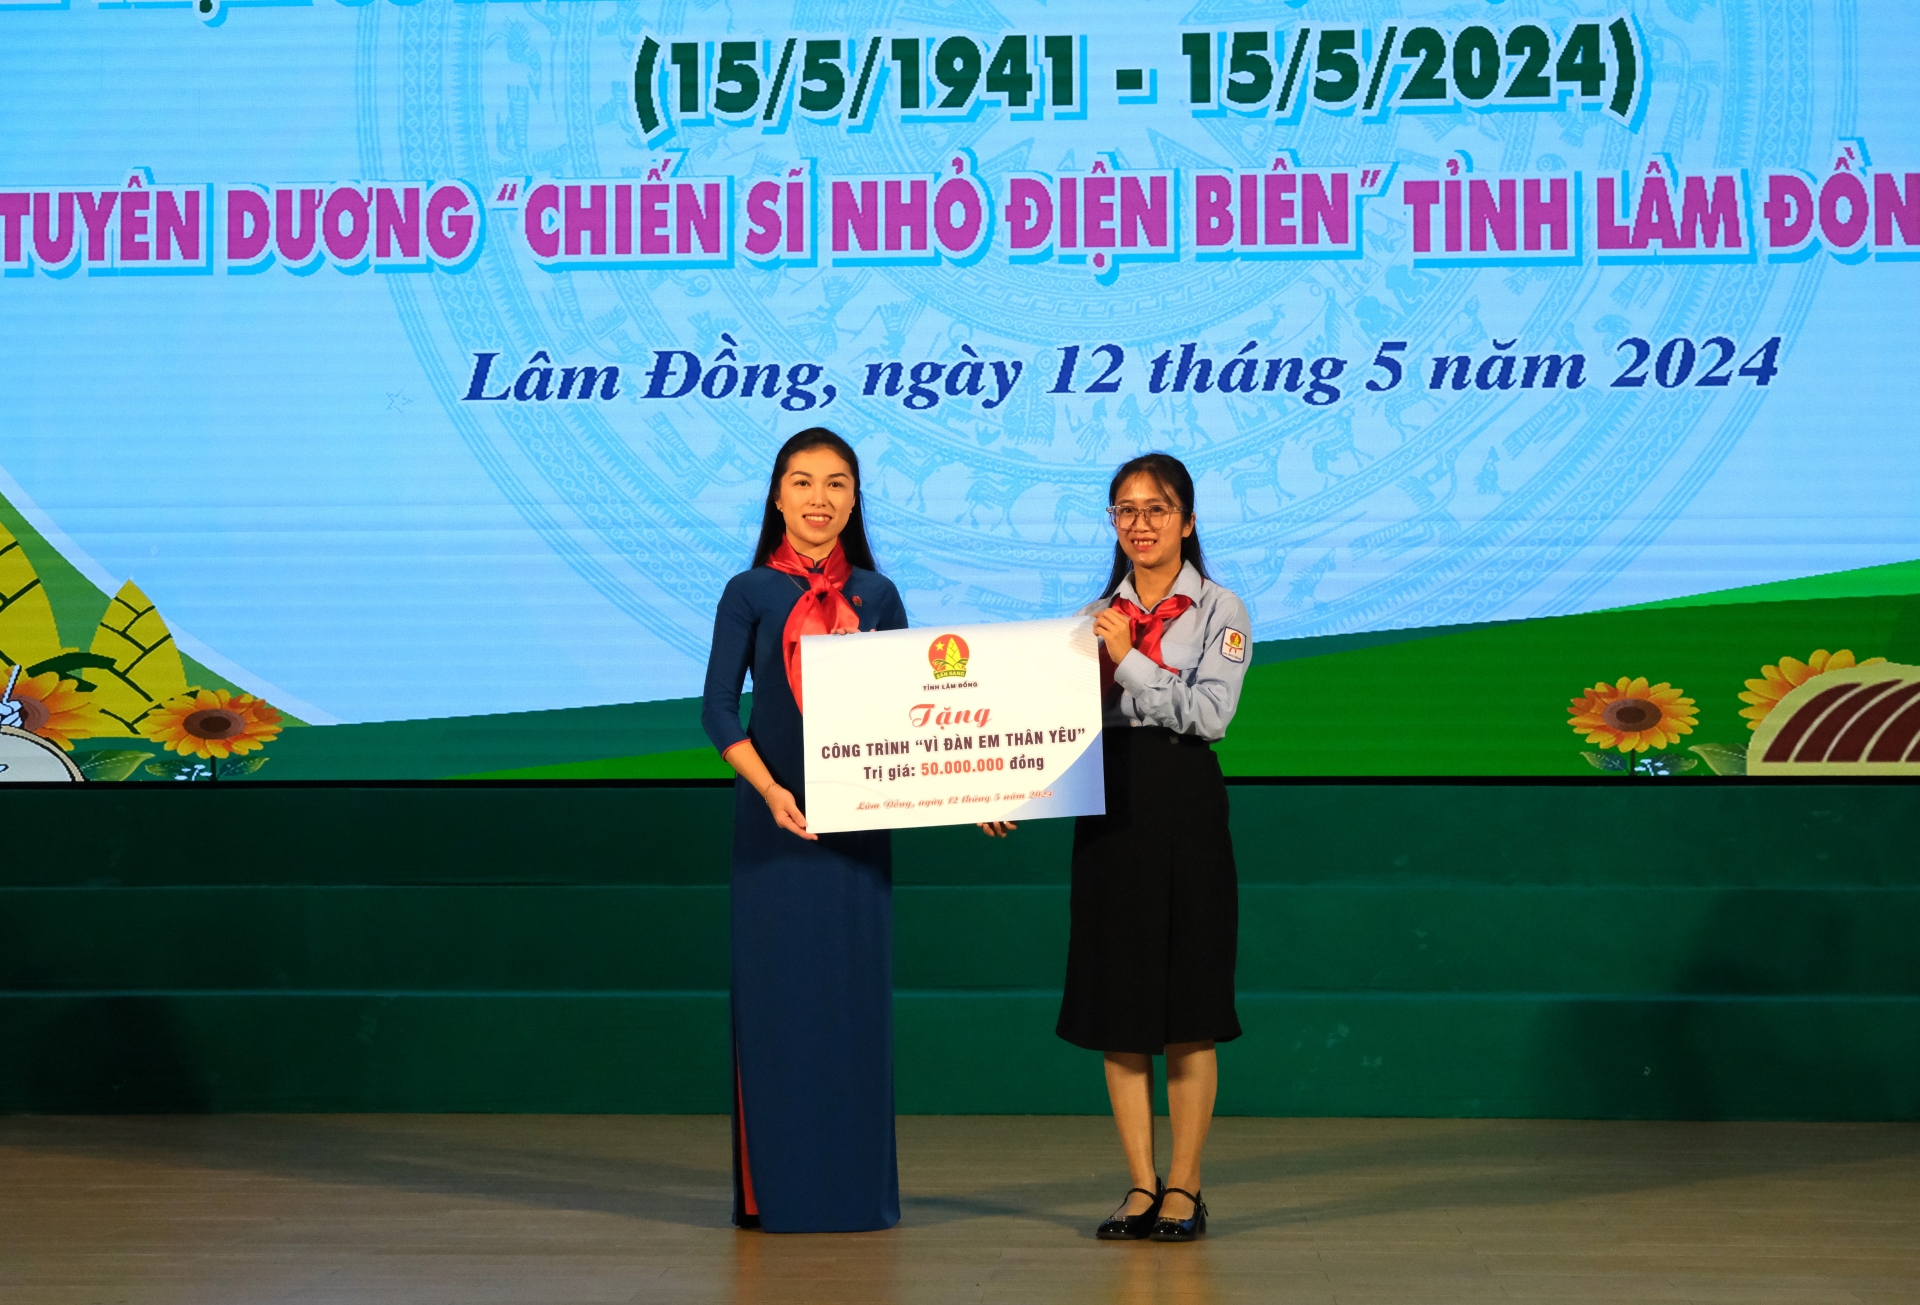 Hội đồng Đội Trung ương - Hội đồng Đội tỉnh Lâm Đồng cũng trao tặng 1 công trình “Vì đàn em thân yêu” cho xã Lát, huyện Lạc Dương